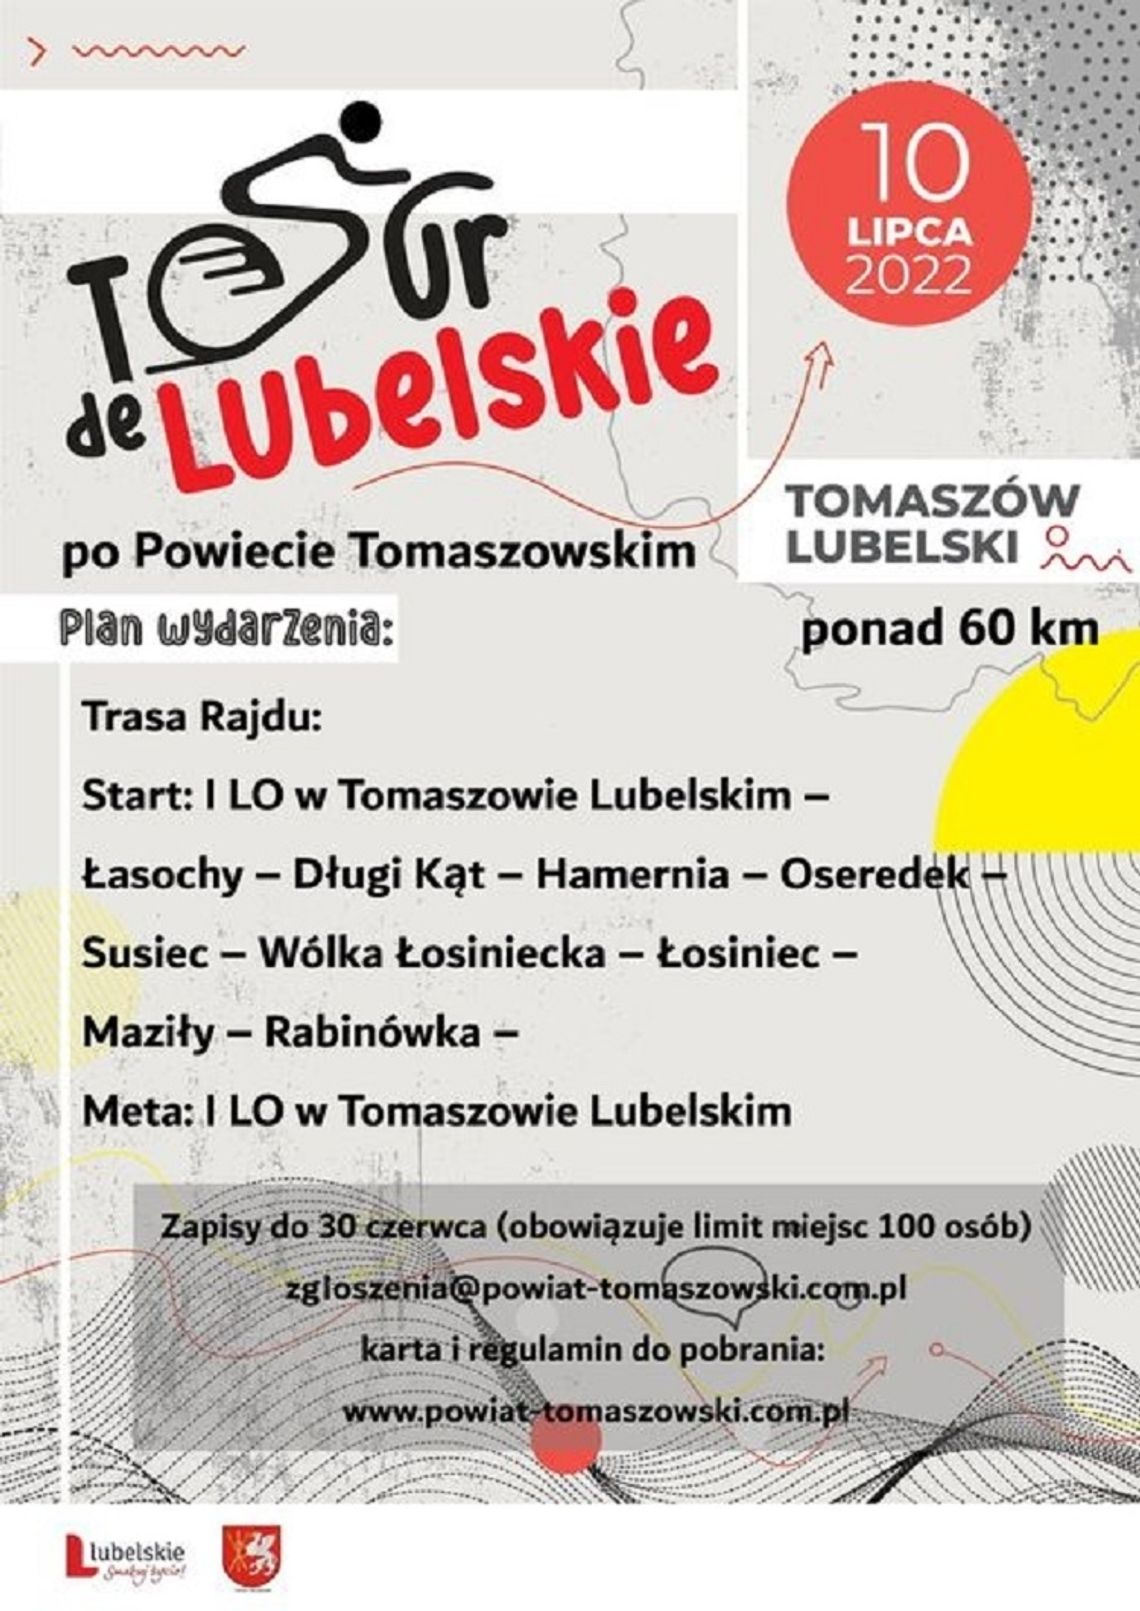 Pow. tomaszowski: Ostatnia szansa na zapisy do Tour de Lubelskie